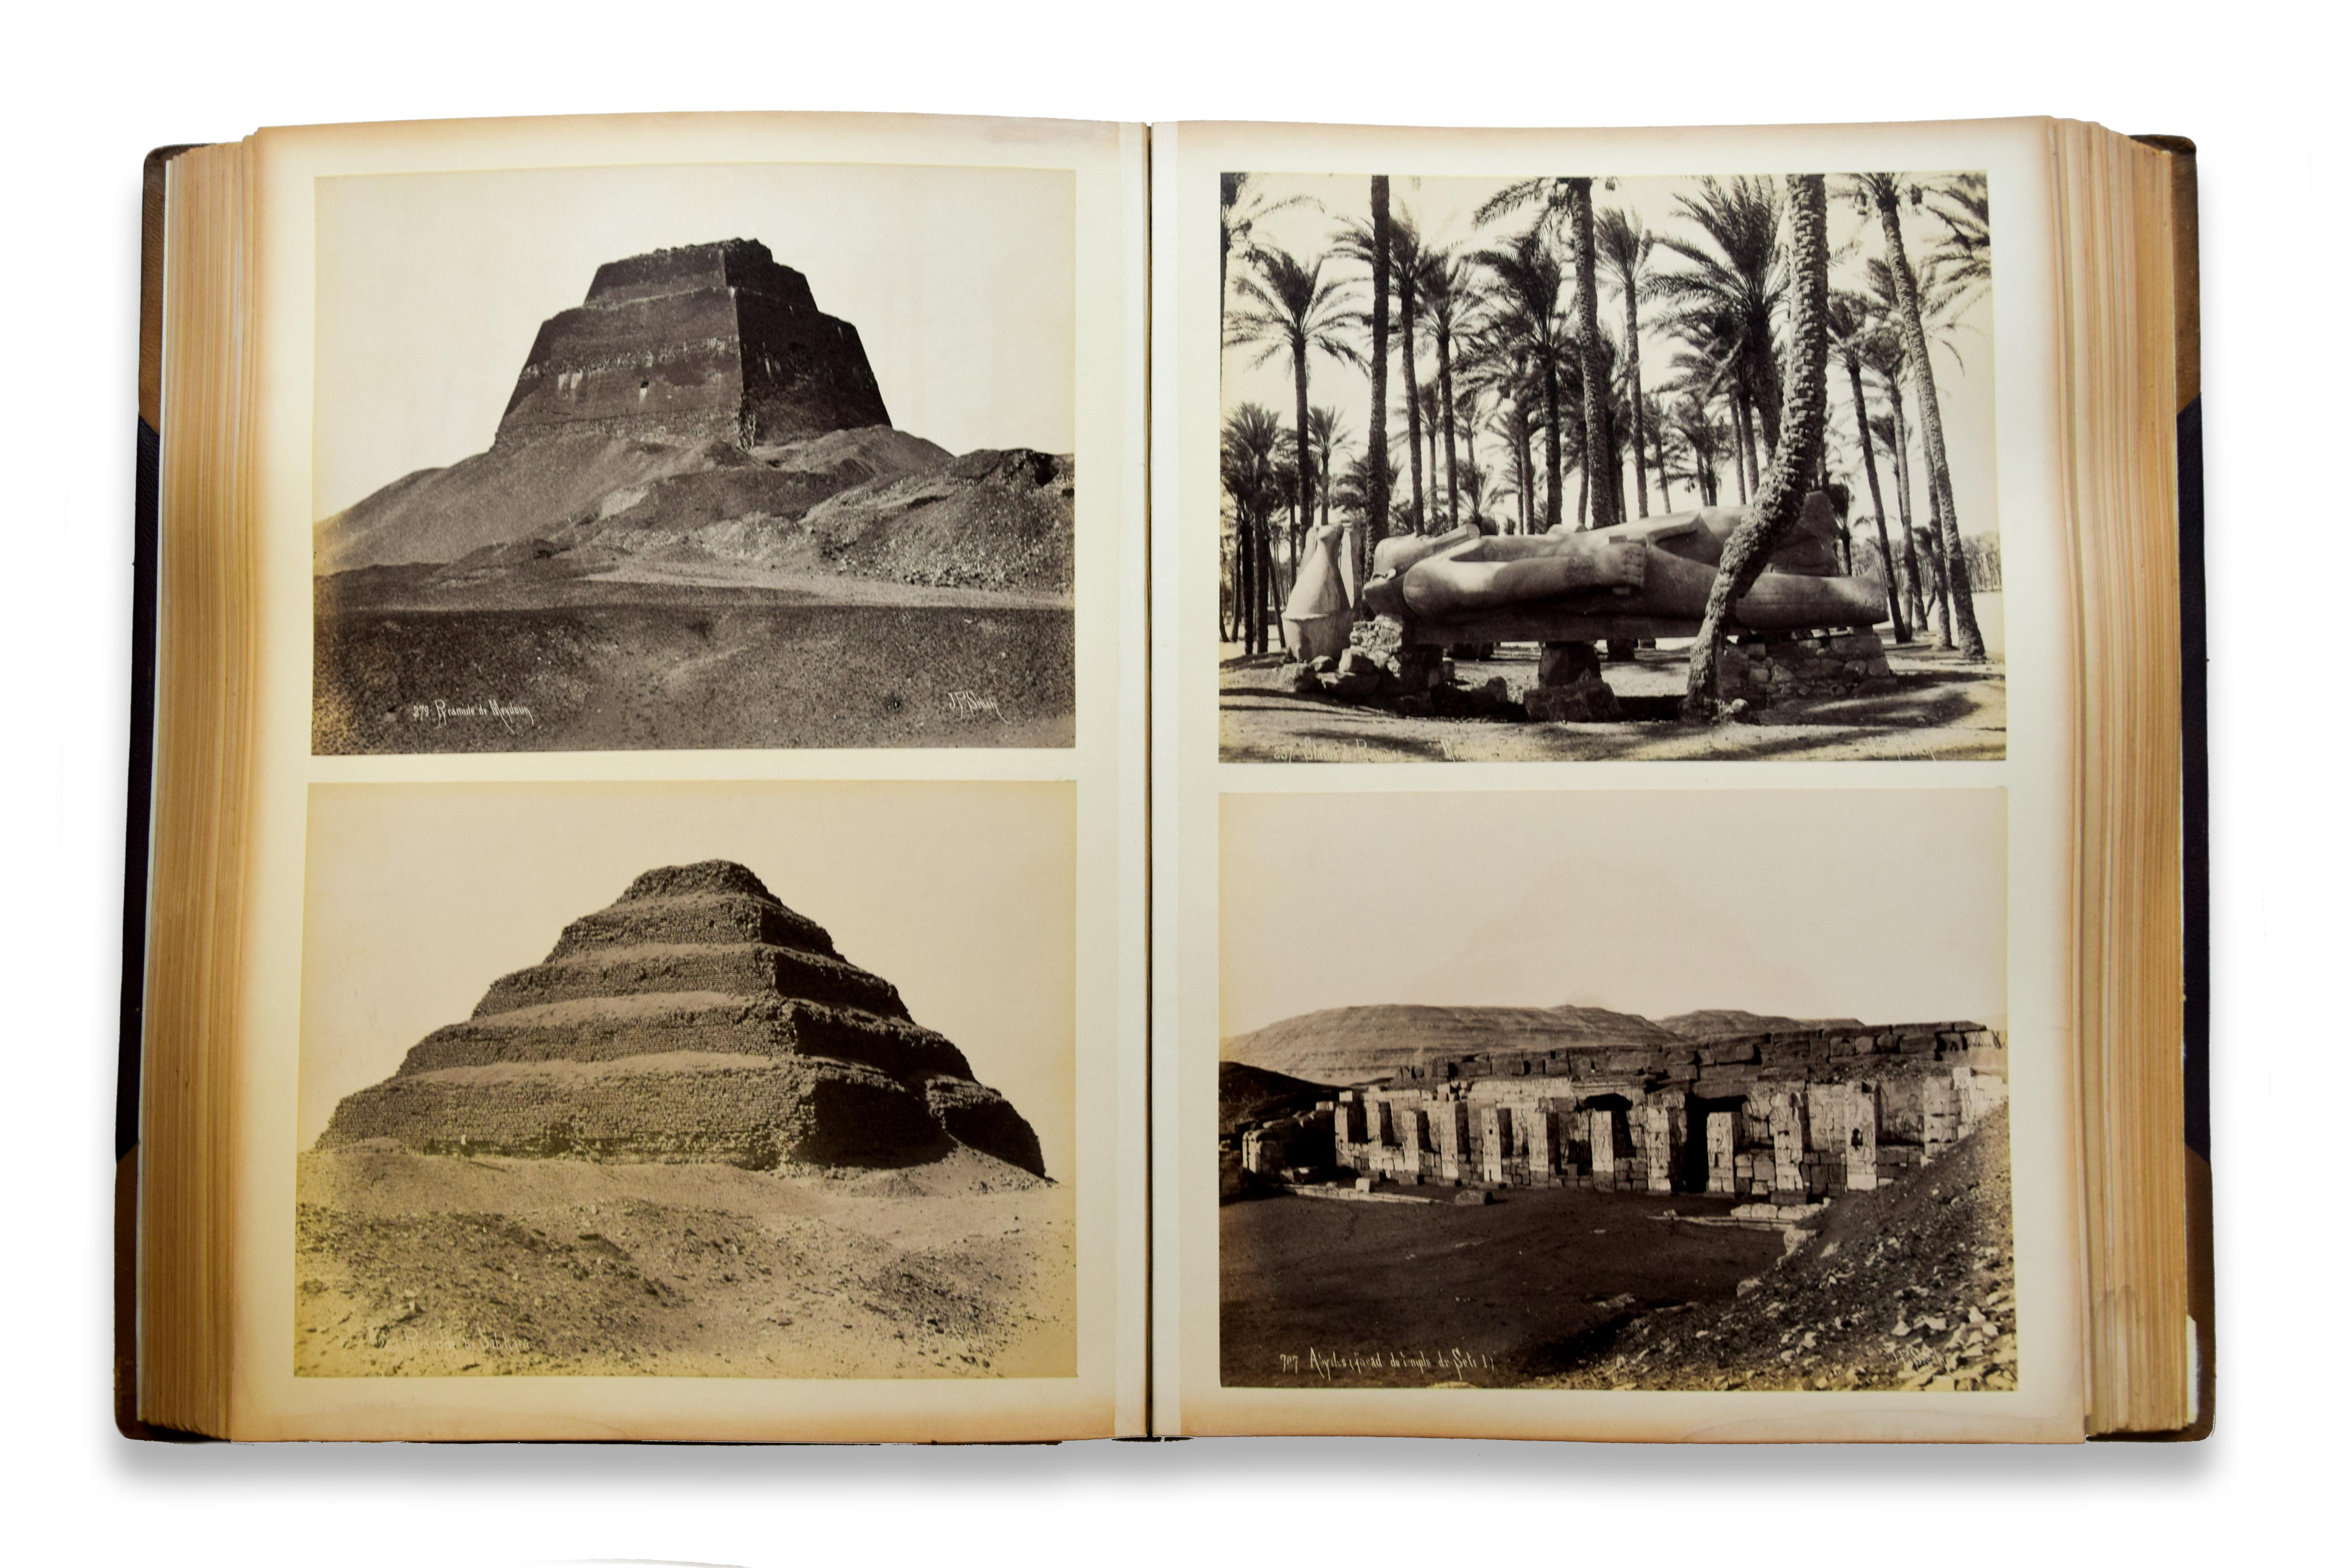 Precious Orientalist Photographic Album, by Sébah Studio and A. Beato - Beige Landscape Photograph by Jean-Pascal Sébah